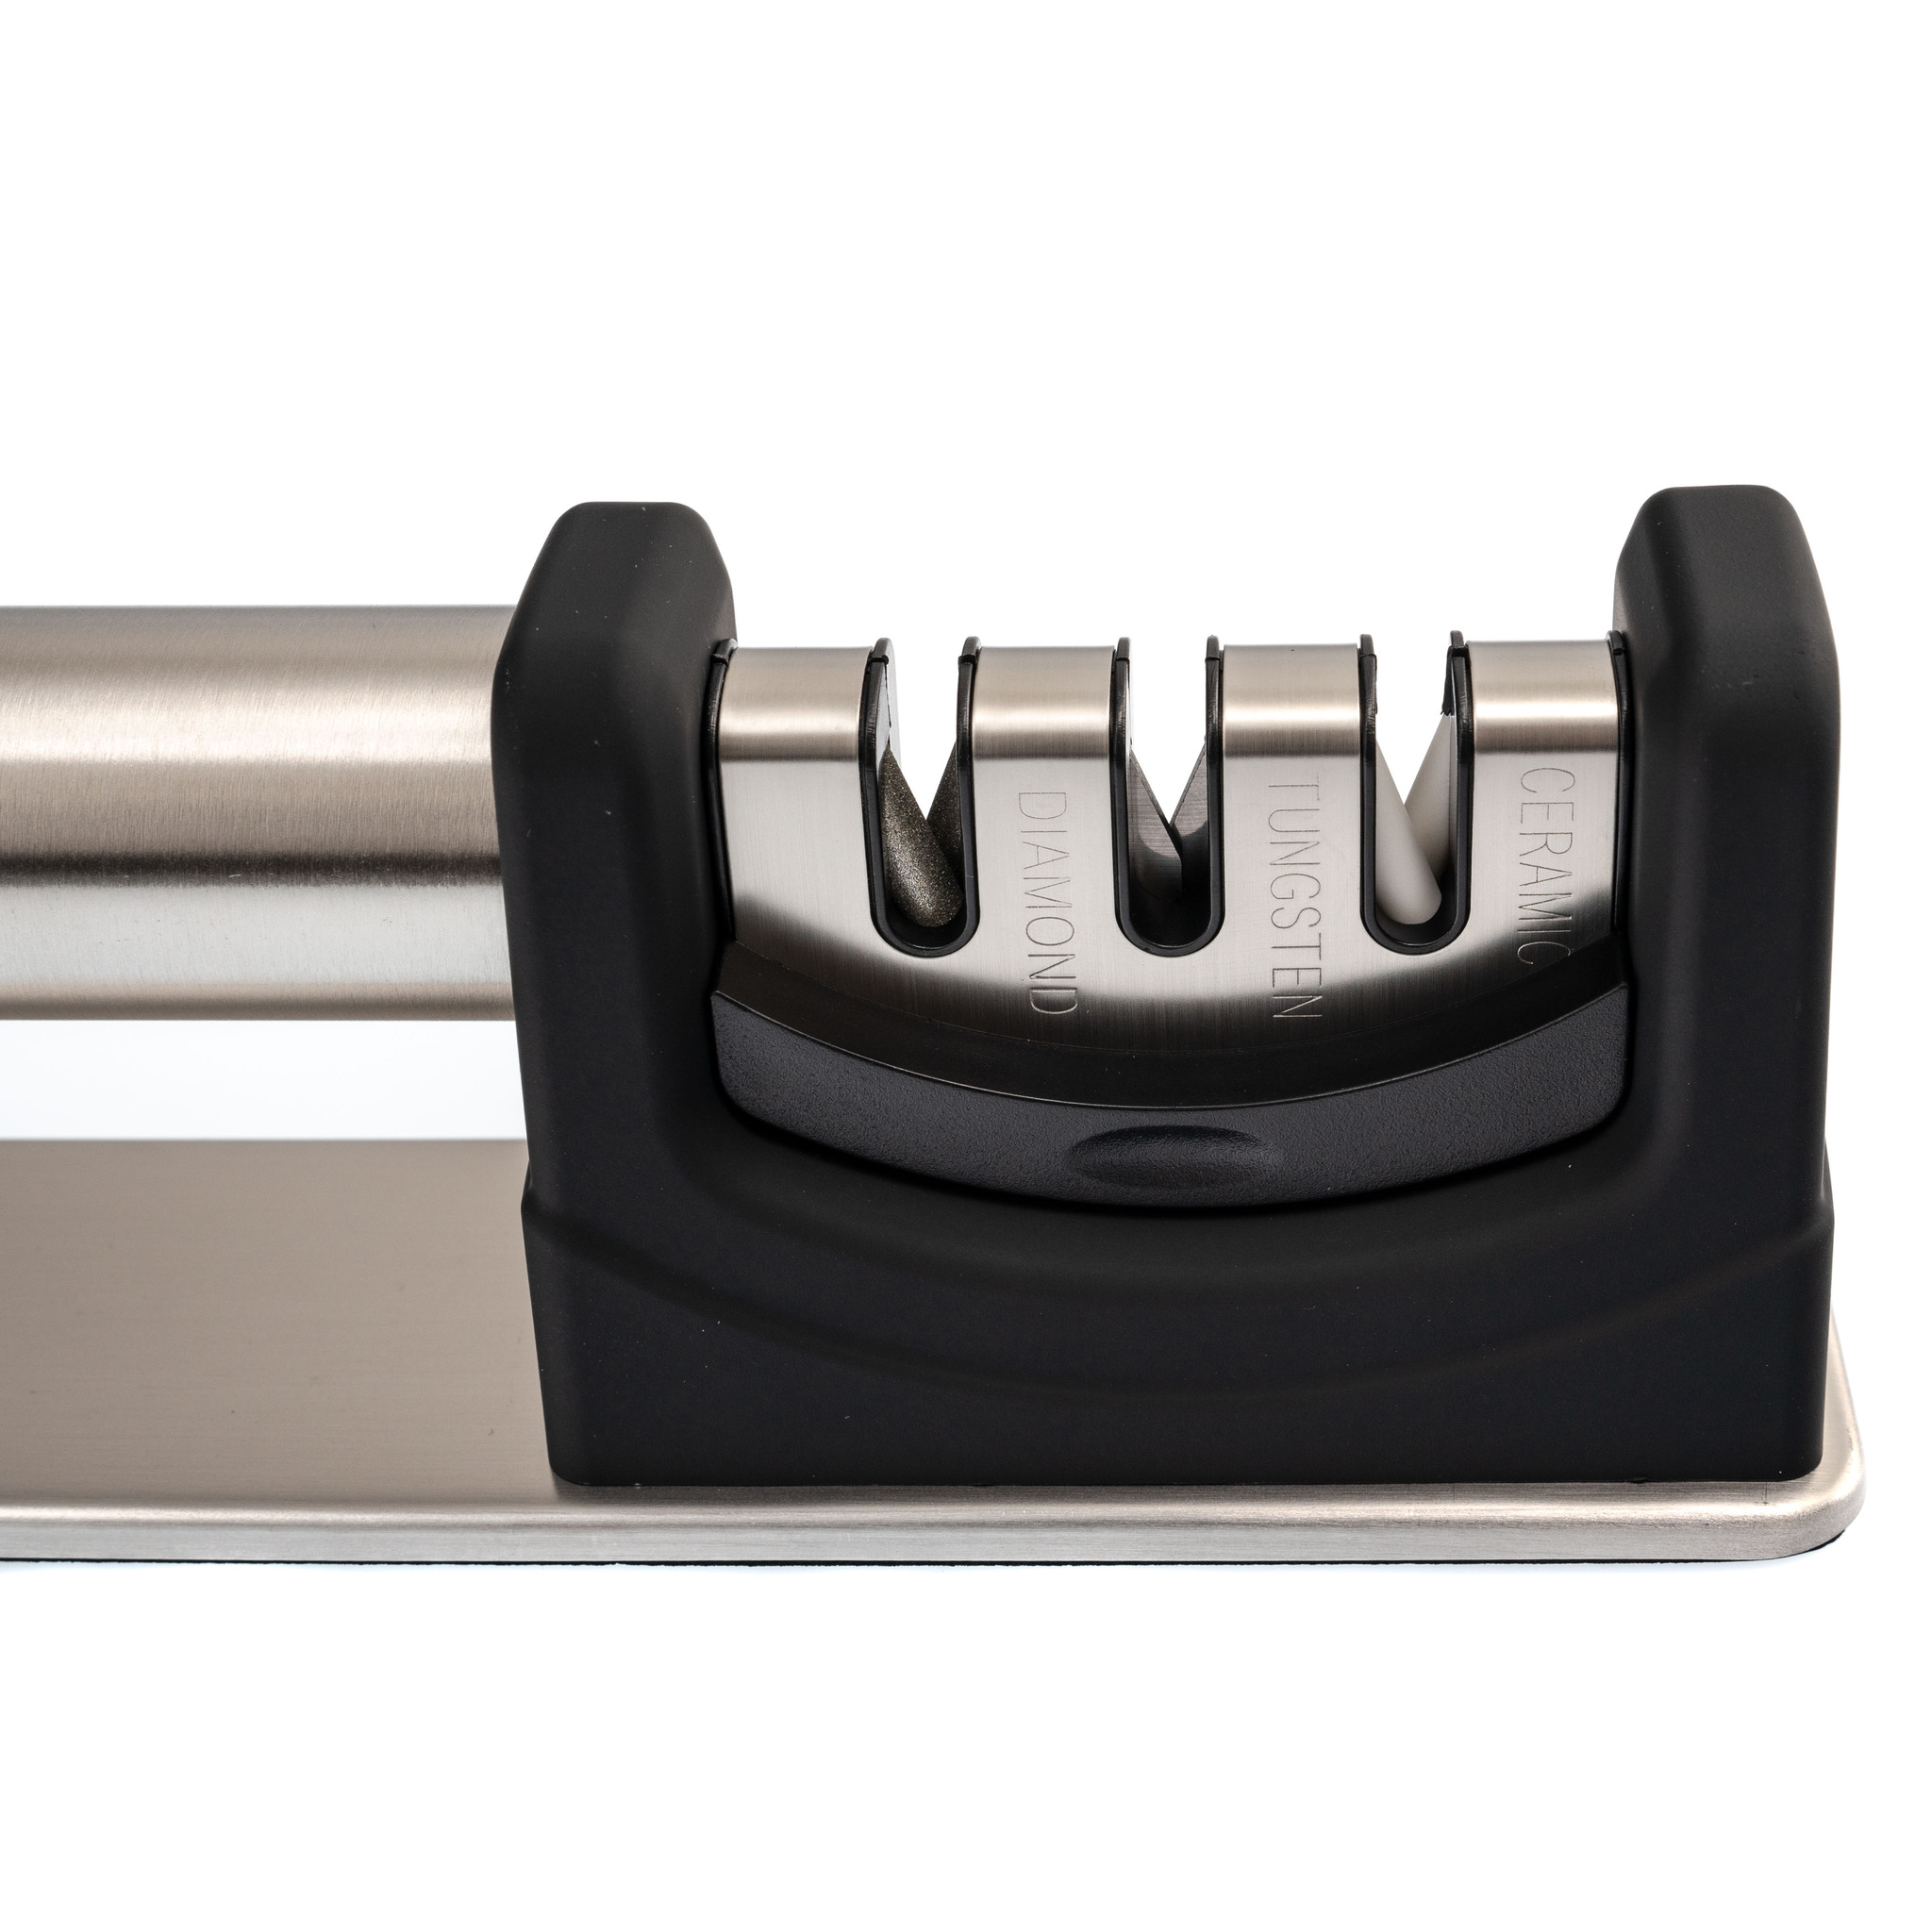  точилка для заточки ножей и ножниц Risam Kitchen, RM026 по .